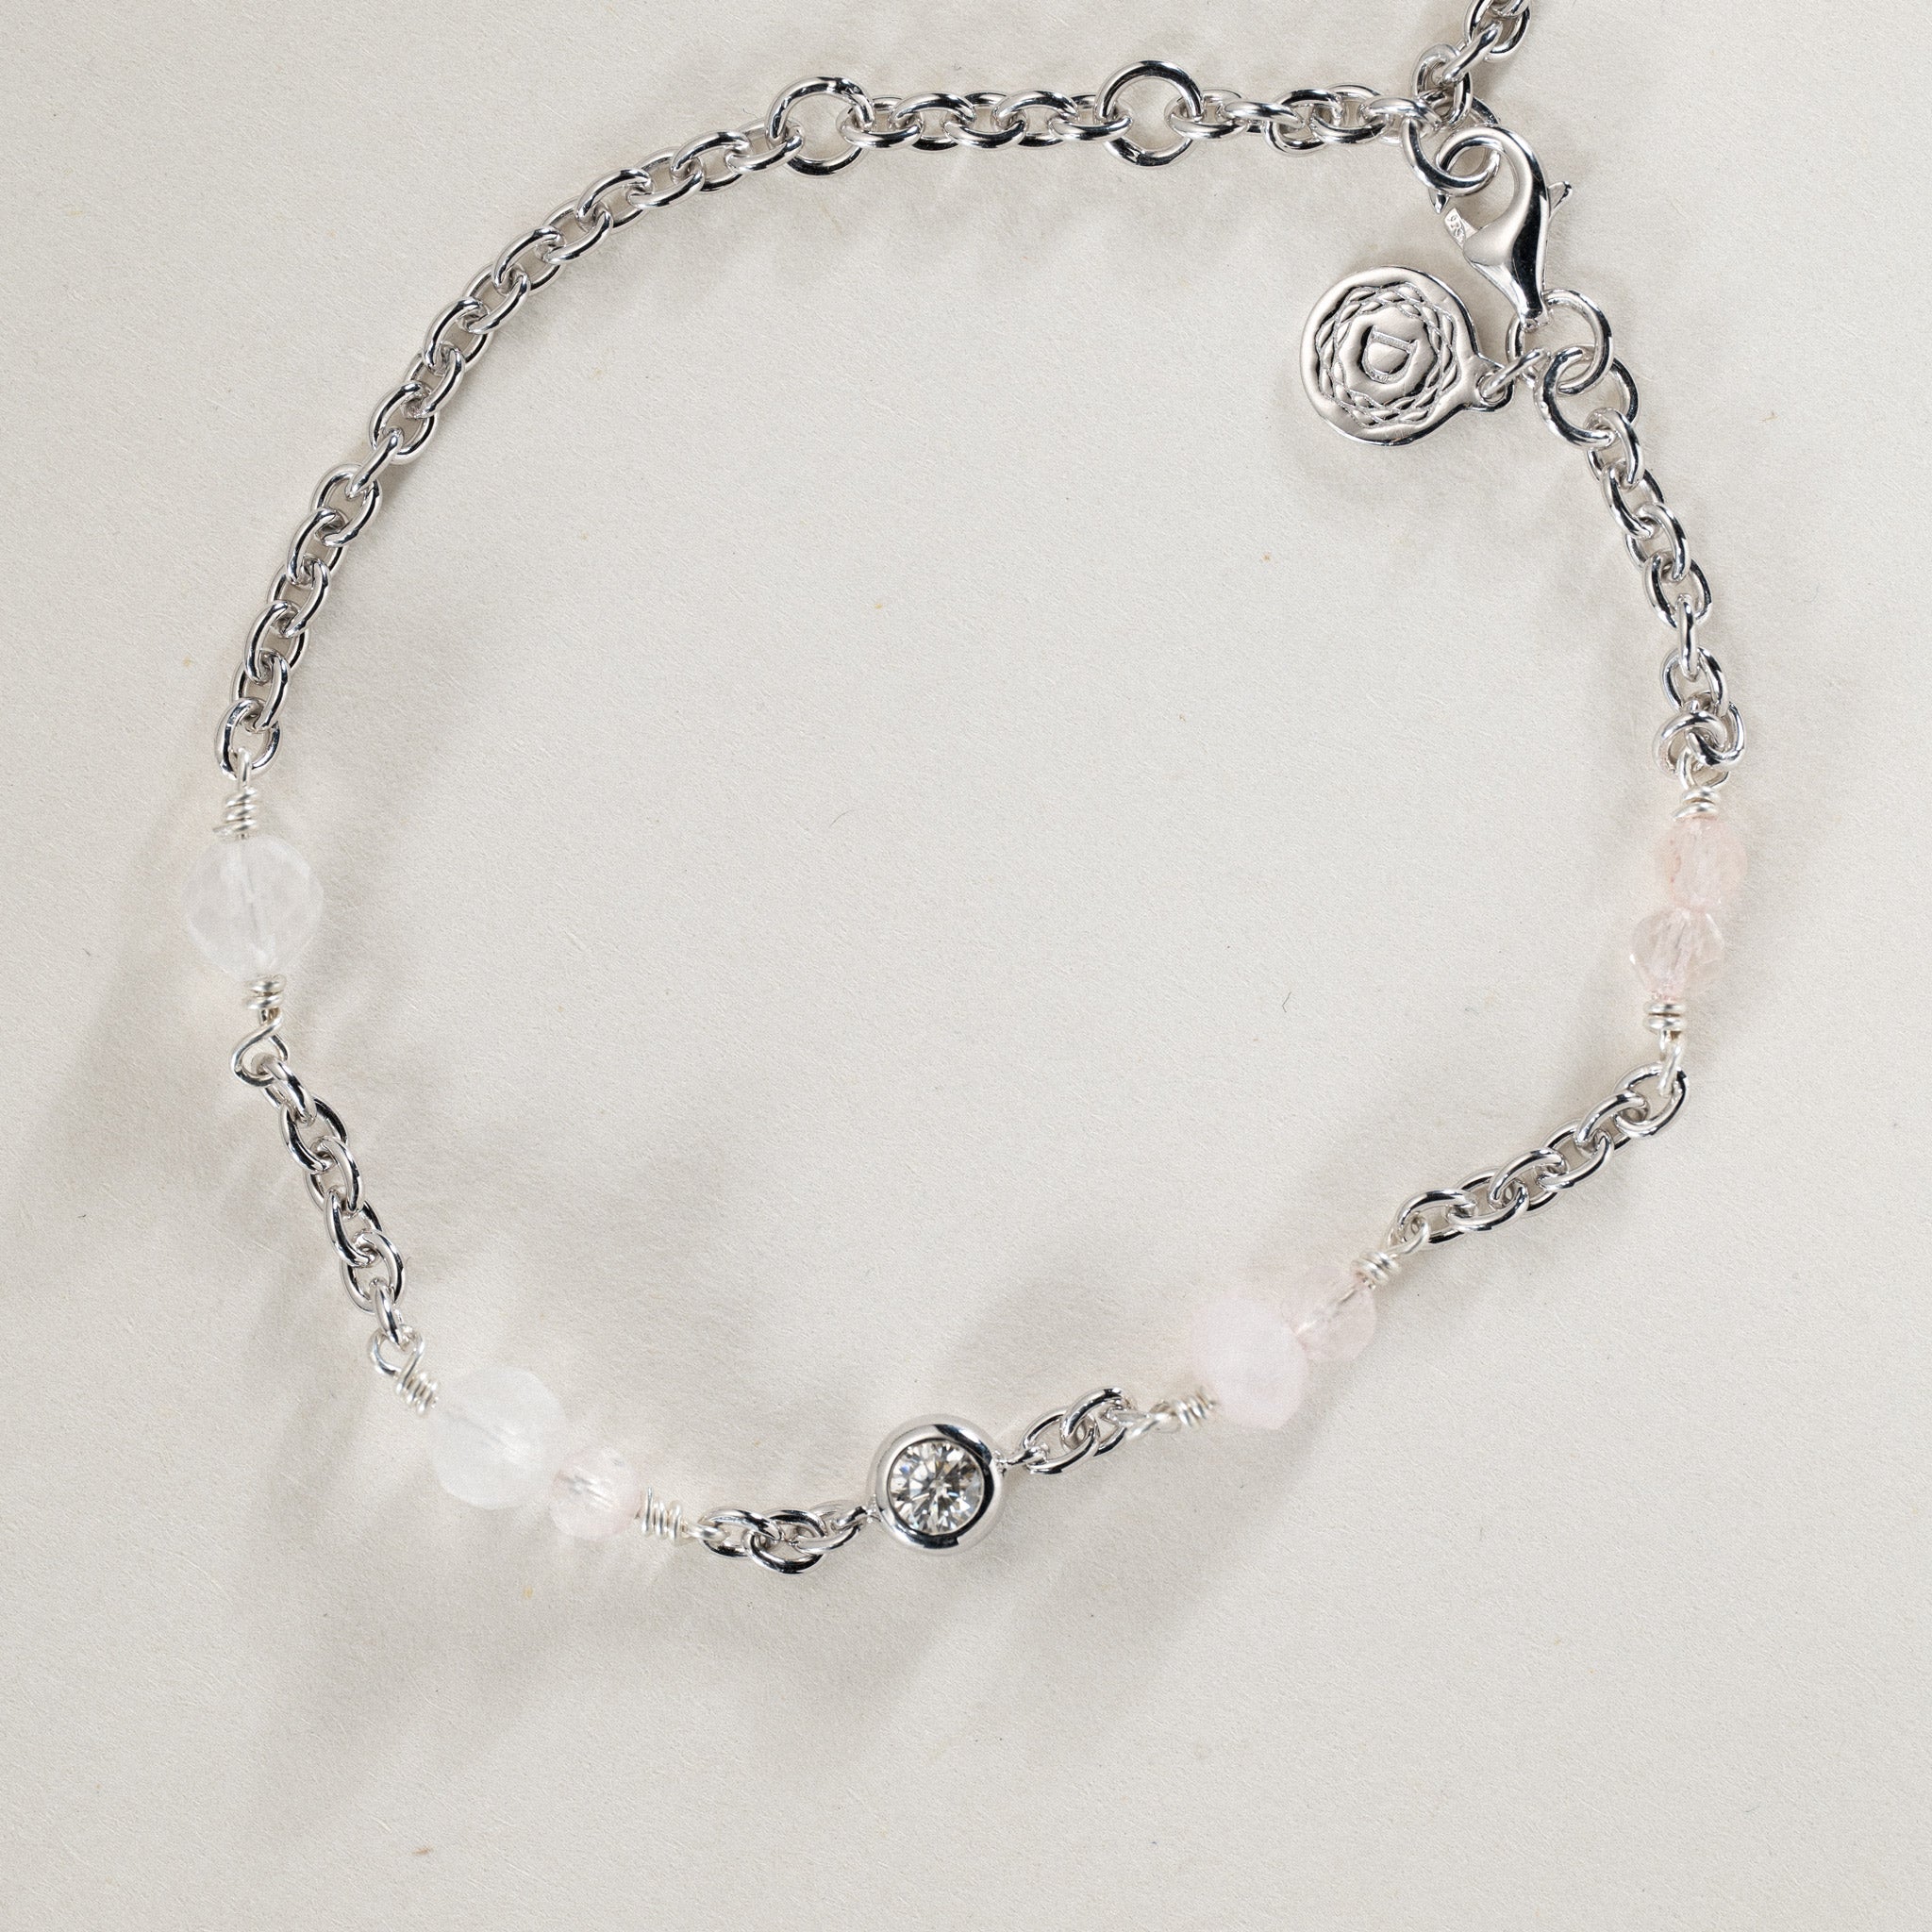 No. 05 - 0.25ct moissanite bead in silver w. semi-precious stone